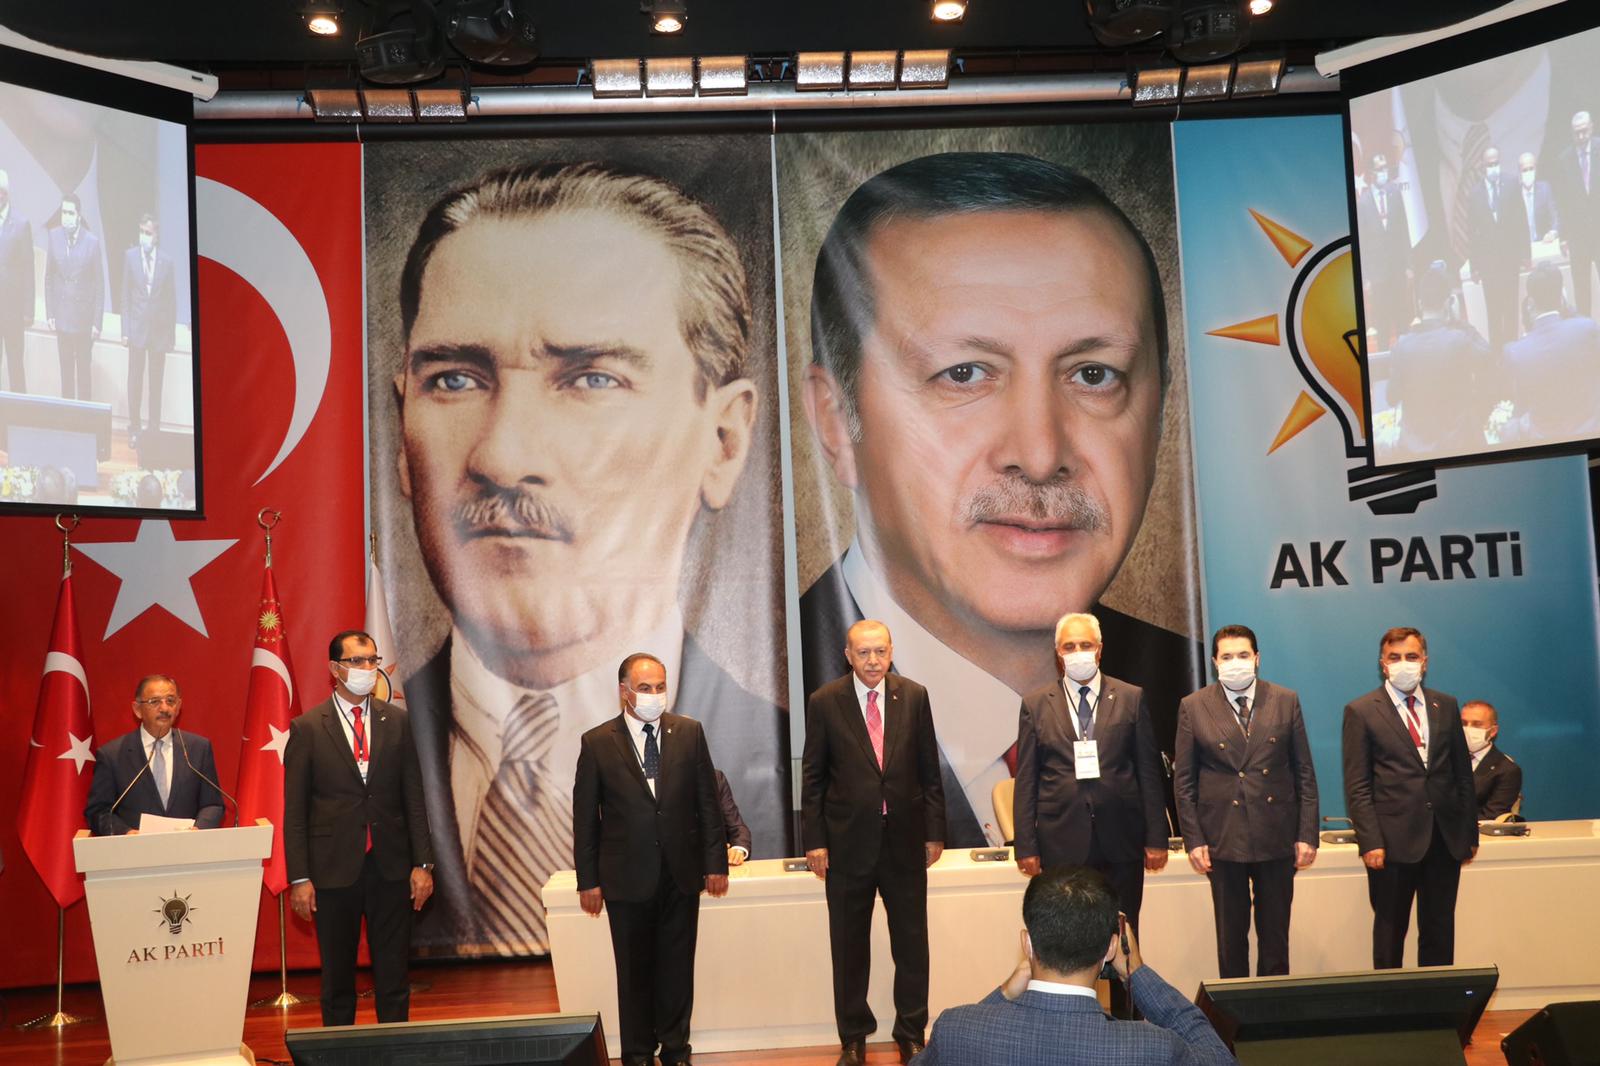 Ağrı’da AK Parti’ye geçen belediye başkanlarına parti rozetleri takıldı